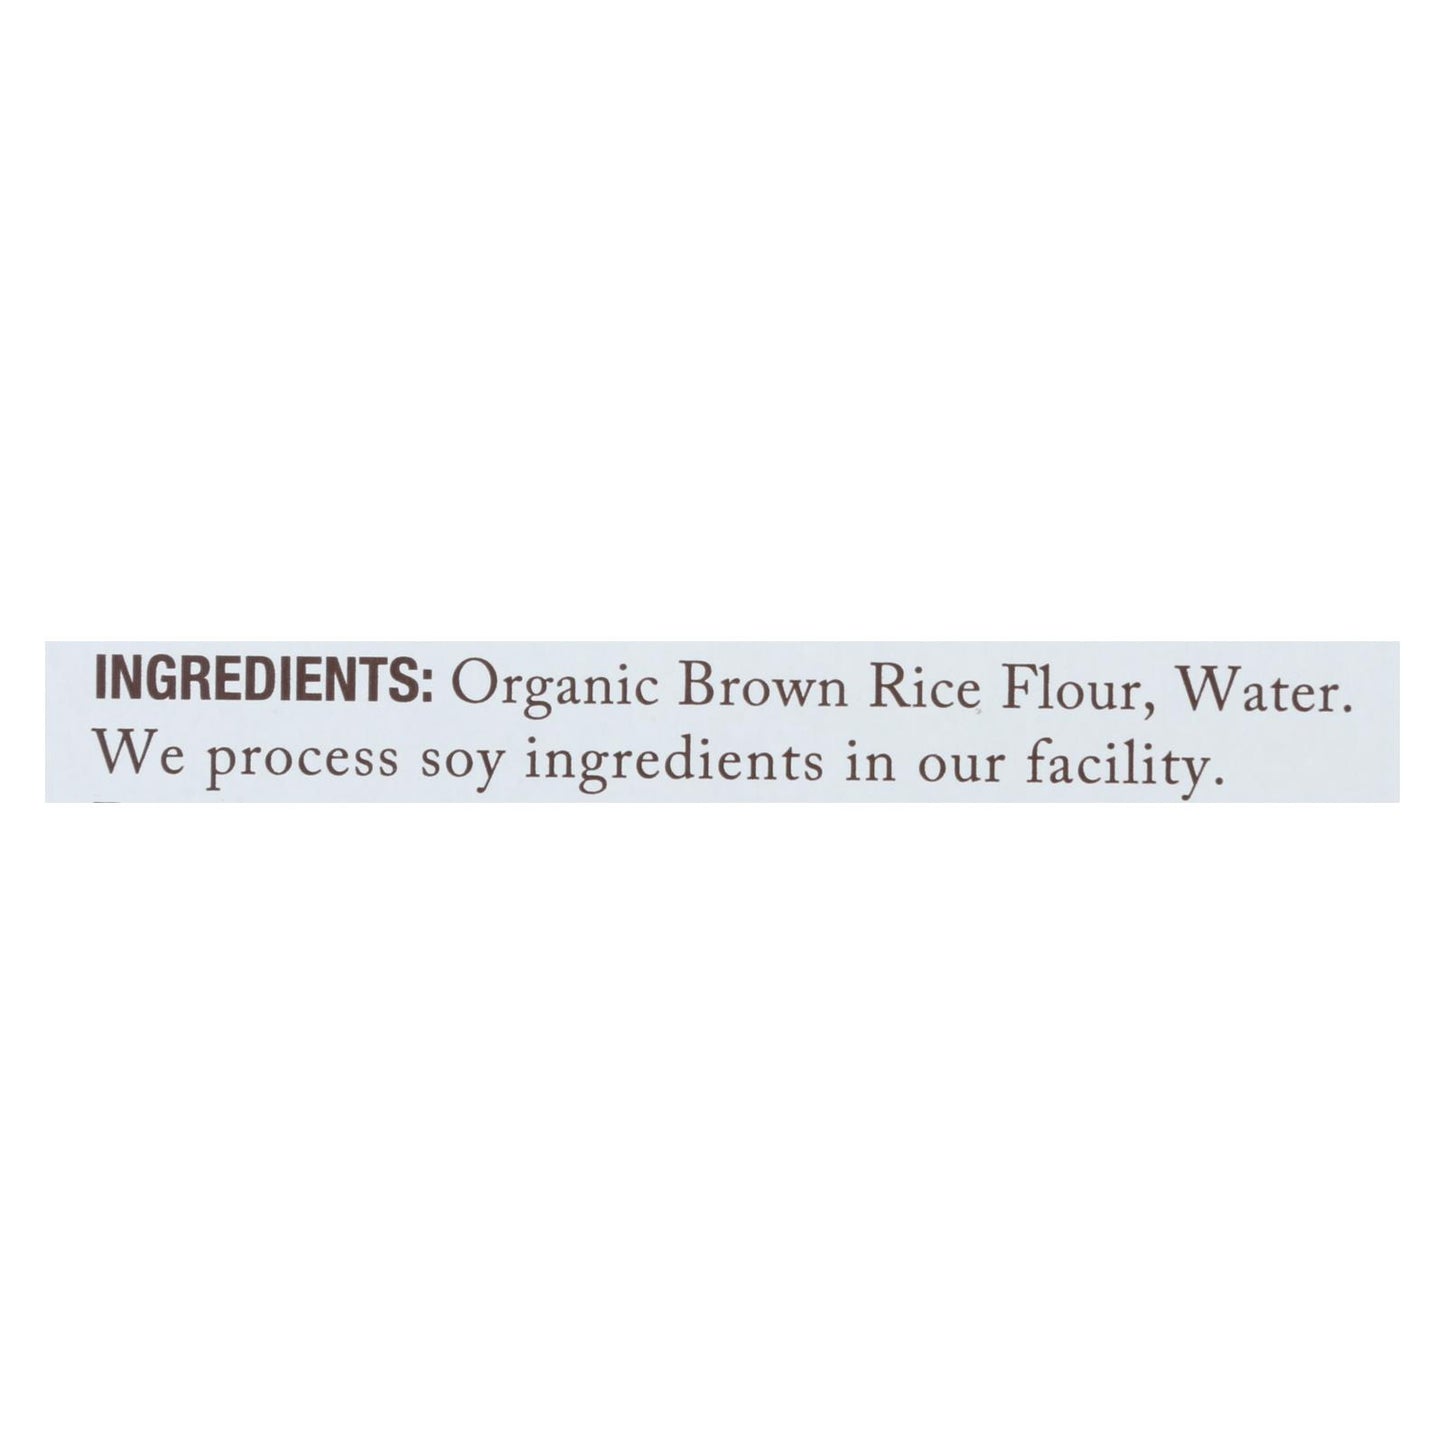 Jovial - Gluten Free Brown Rice Pasta - Capellini - Case Of 12 - 12 Oz.